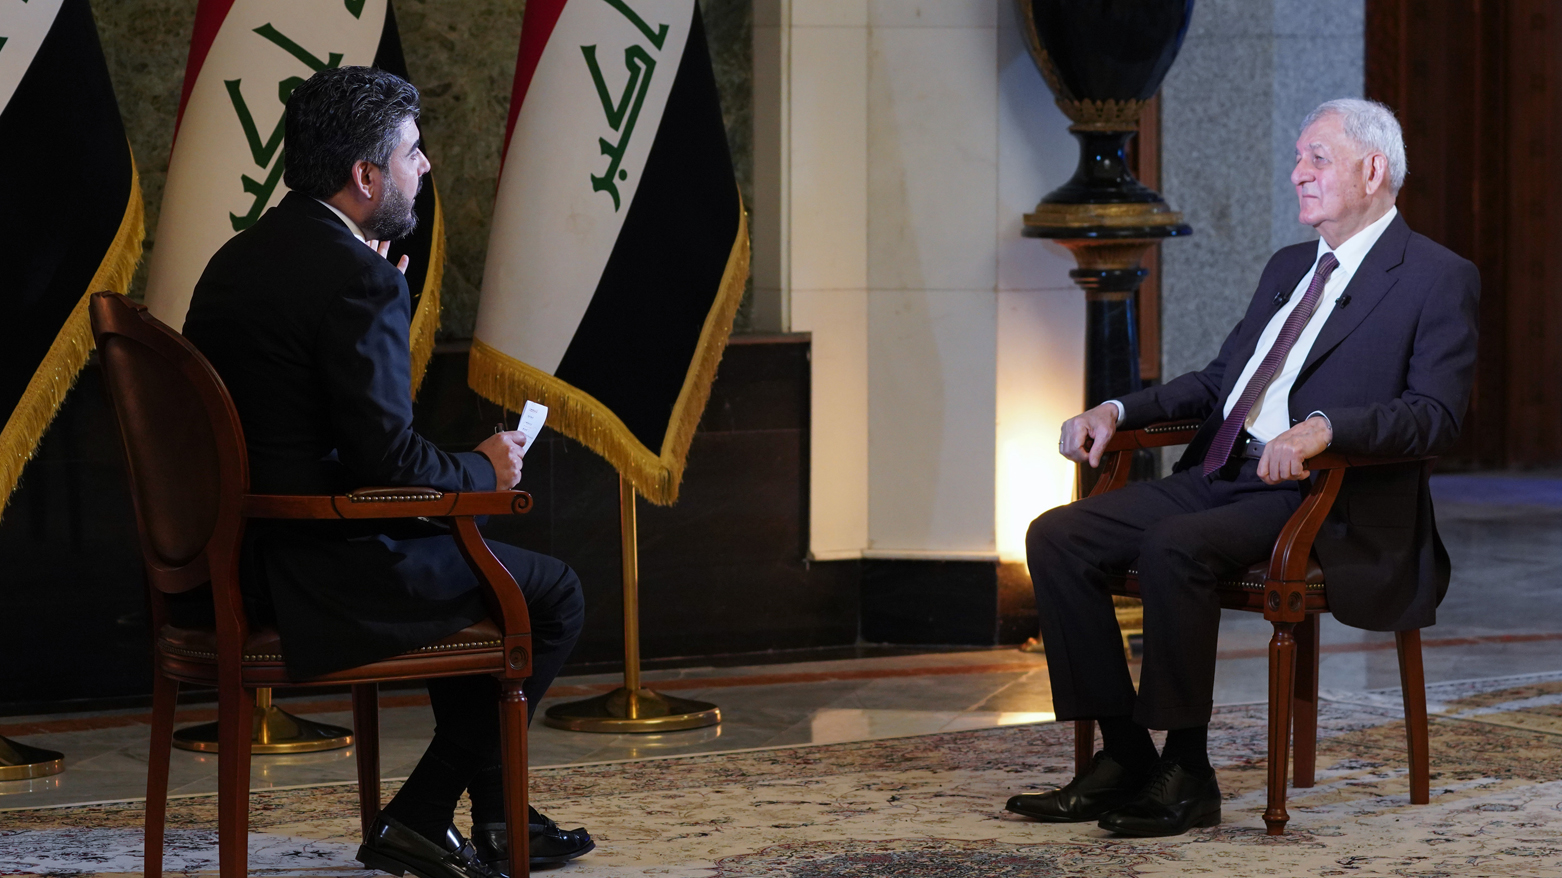 عبداللطیف رشید، رئیس جمهور عراق فدرال در هنگام مصاحبه با مجری شبکه خبری العربیه الحدث - عکس؛ پایگاه خبری ریاست جمهوری عراق